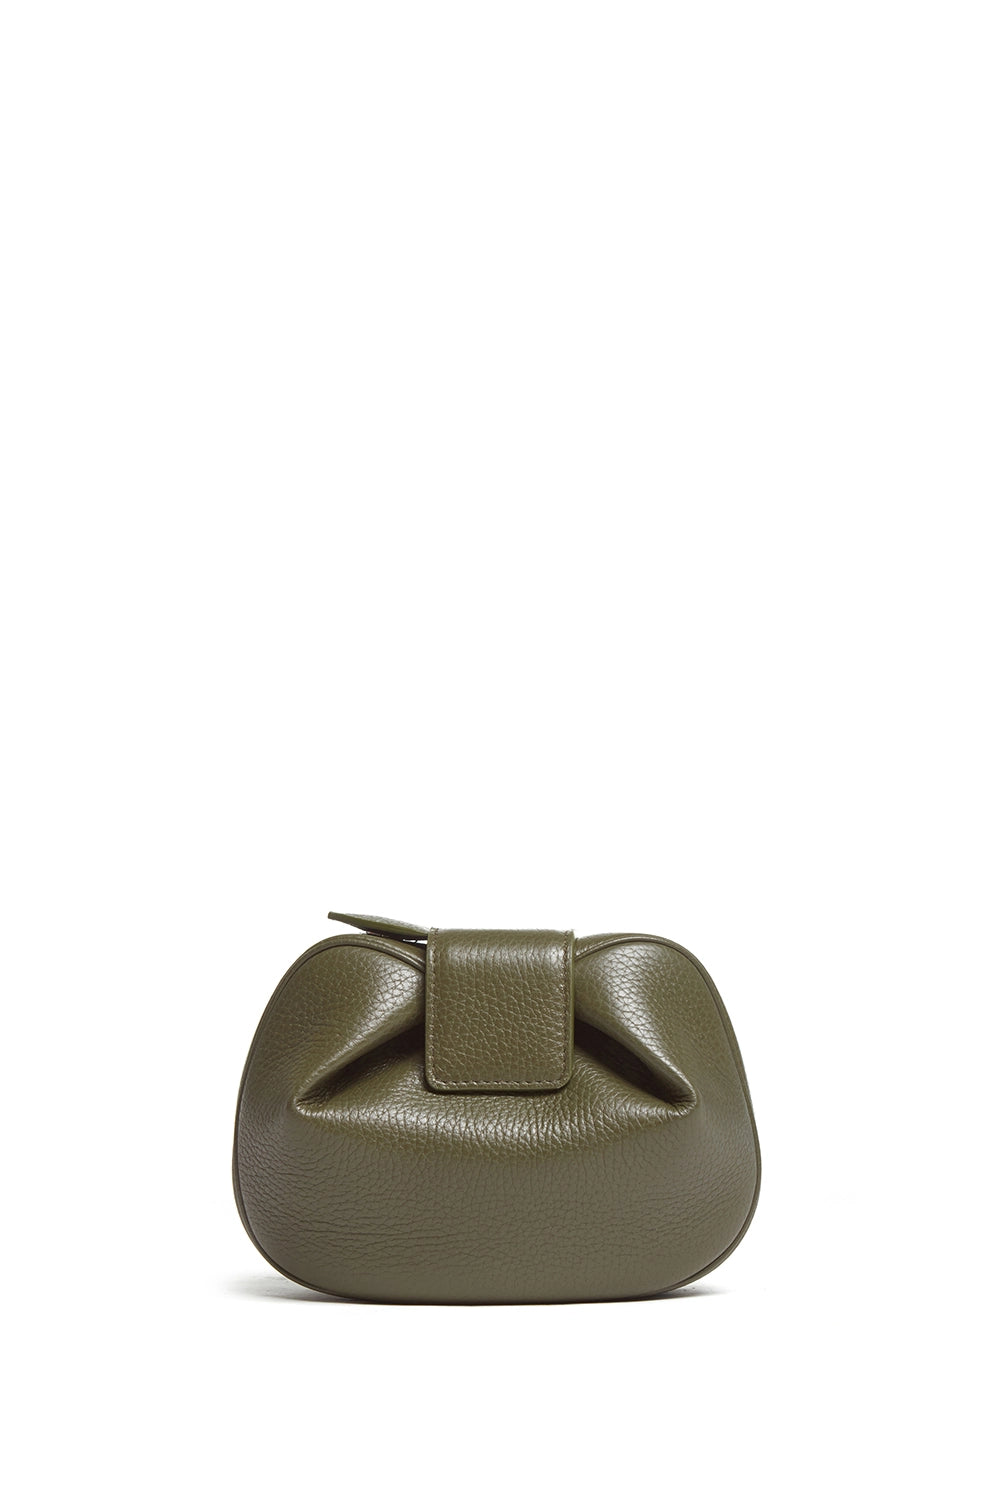 Rocawear Olive Green Clutch Purse/Handbag | eBay